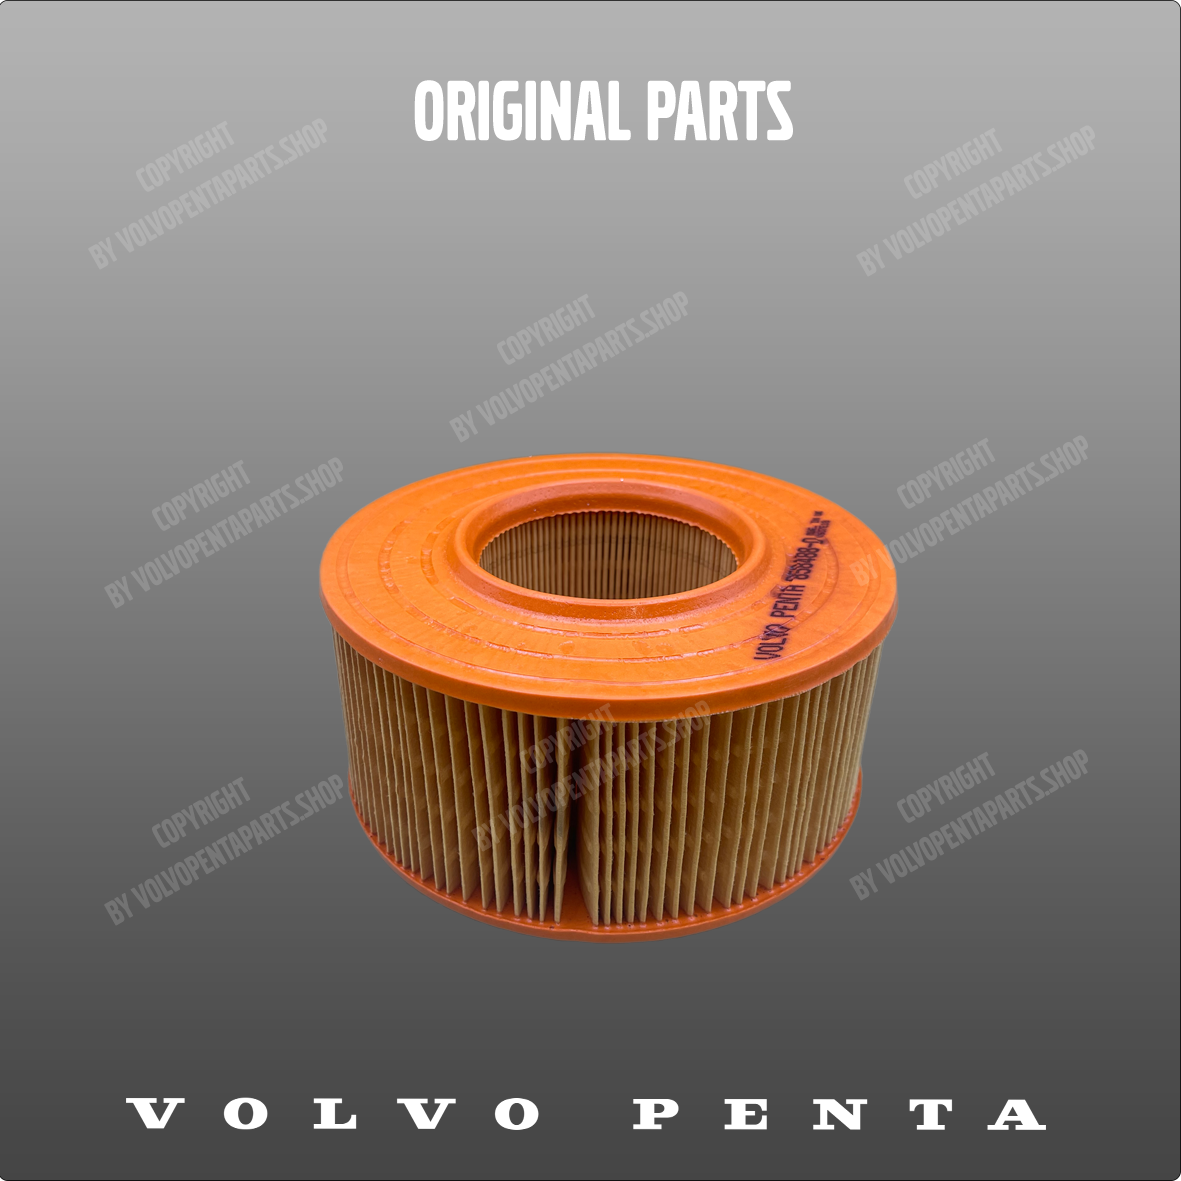 Volvo Penta air filter insert 858488